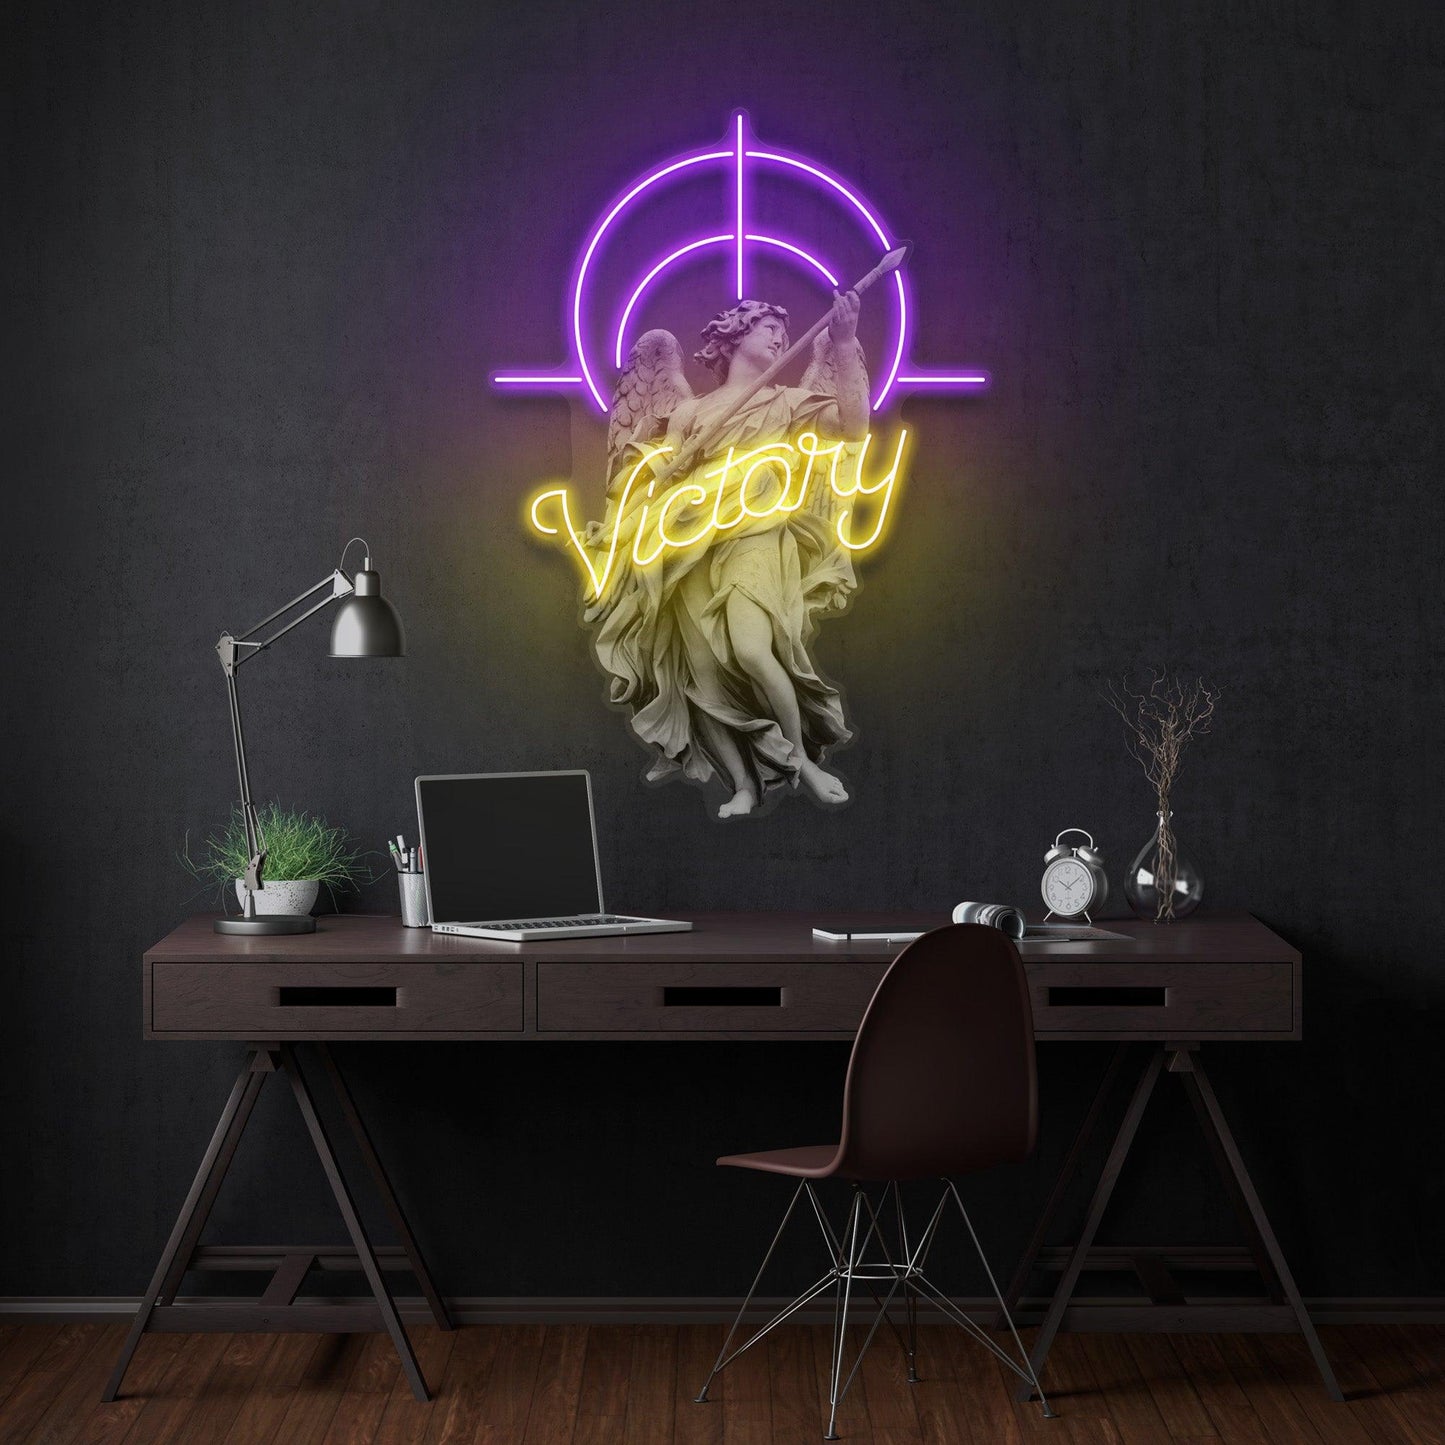 Victory Angel Led Neon Acrylic Artwork - Neonzastudio